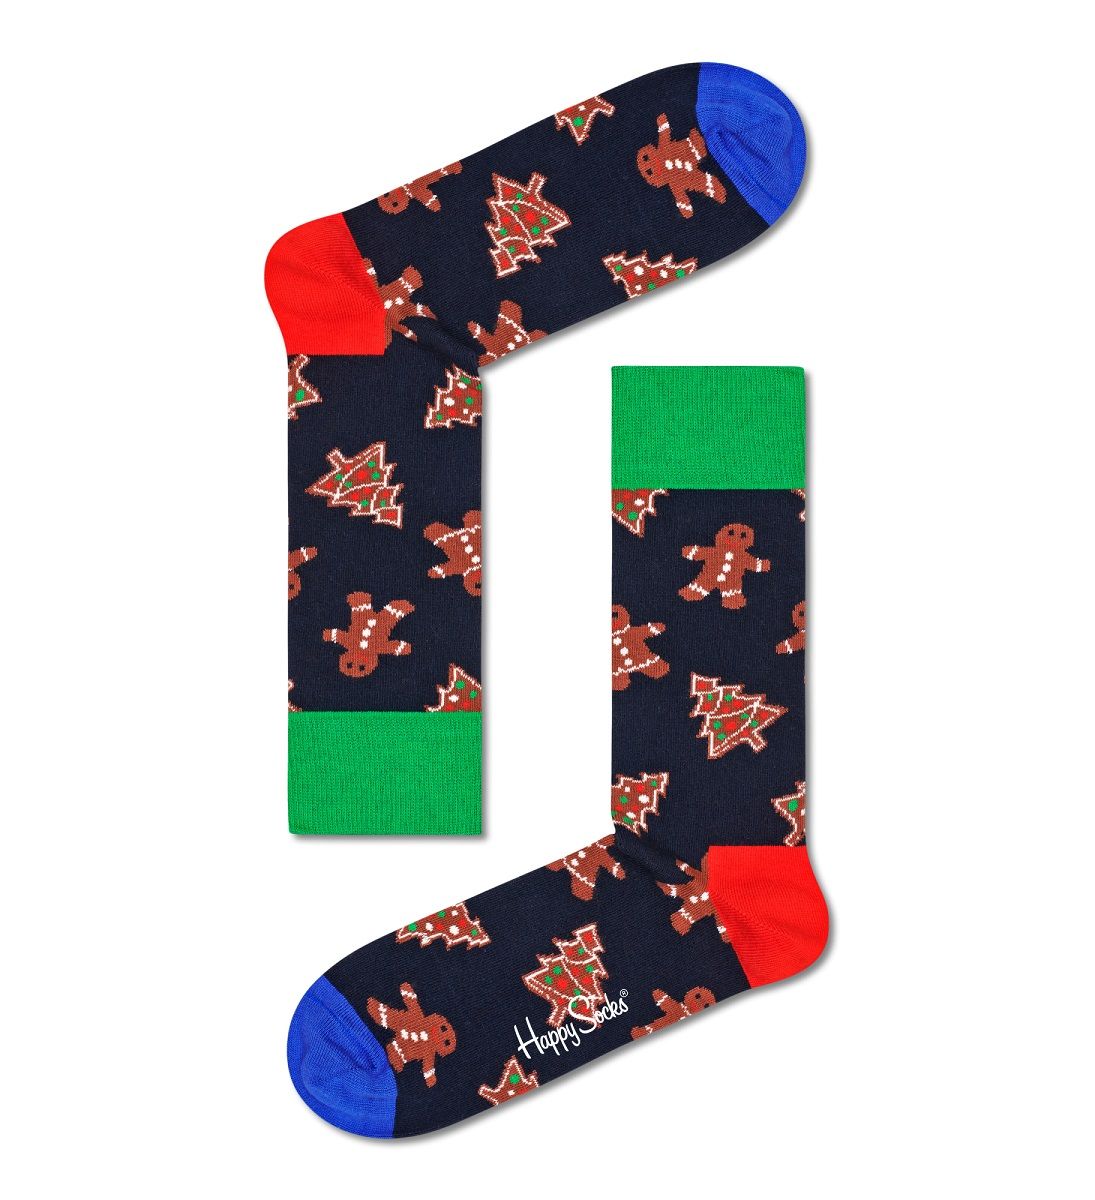 Носки унисекс Gingerbread Cookies Sock с пряниками.